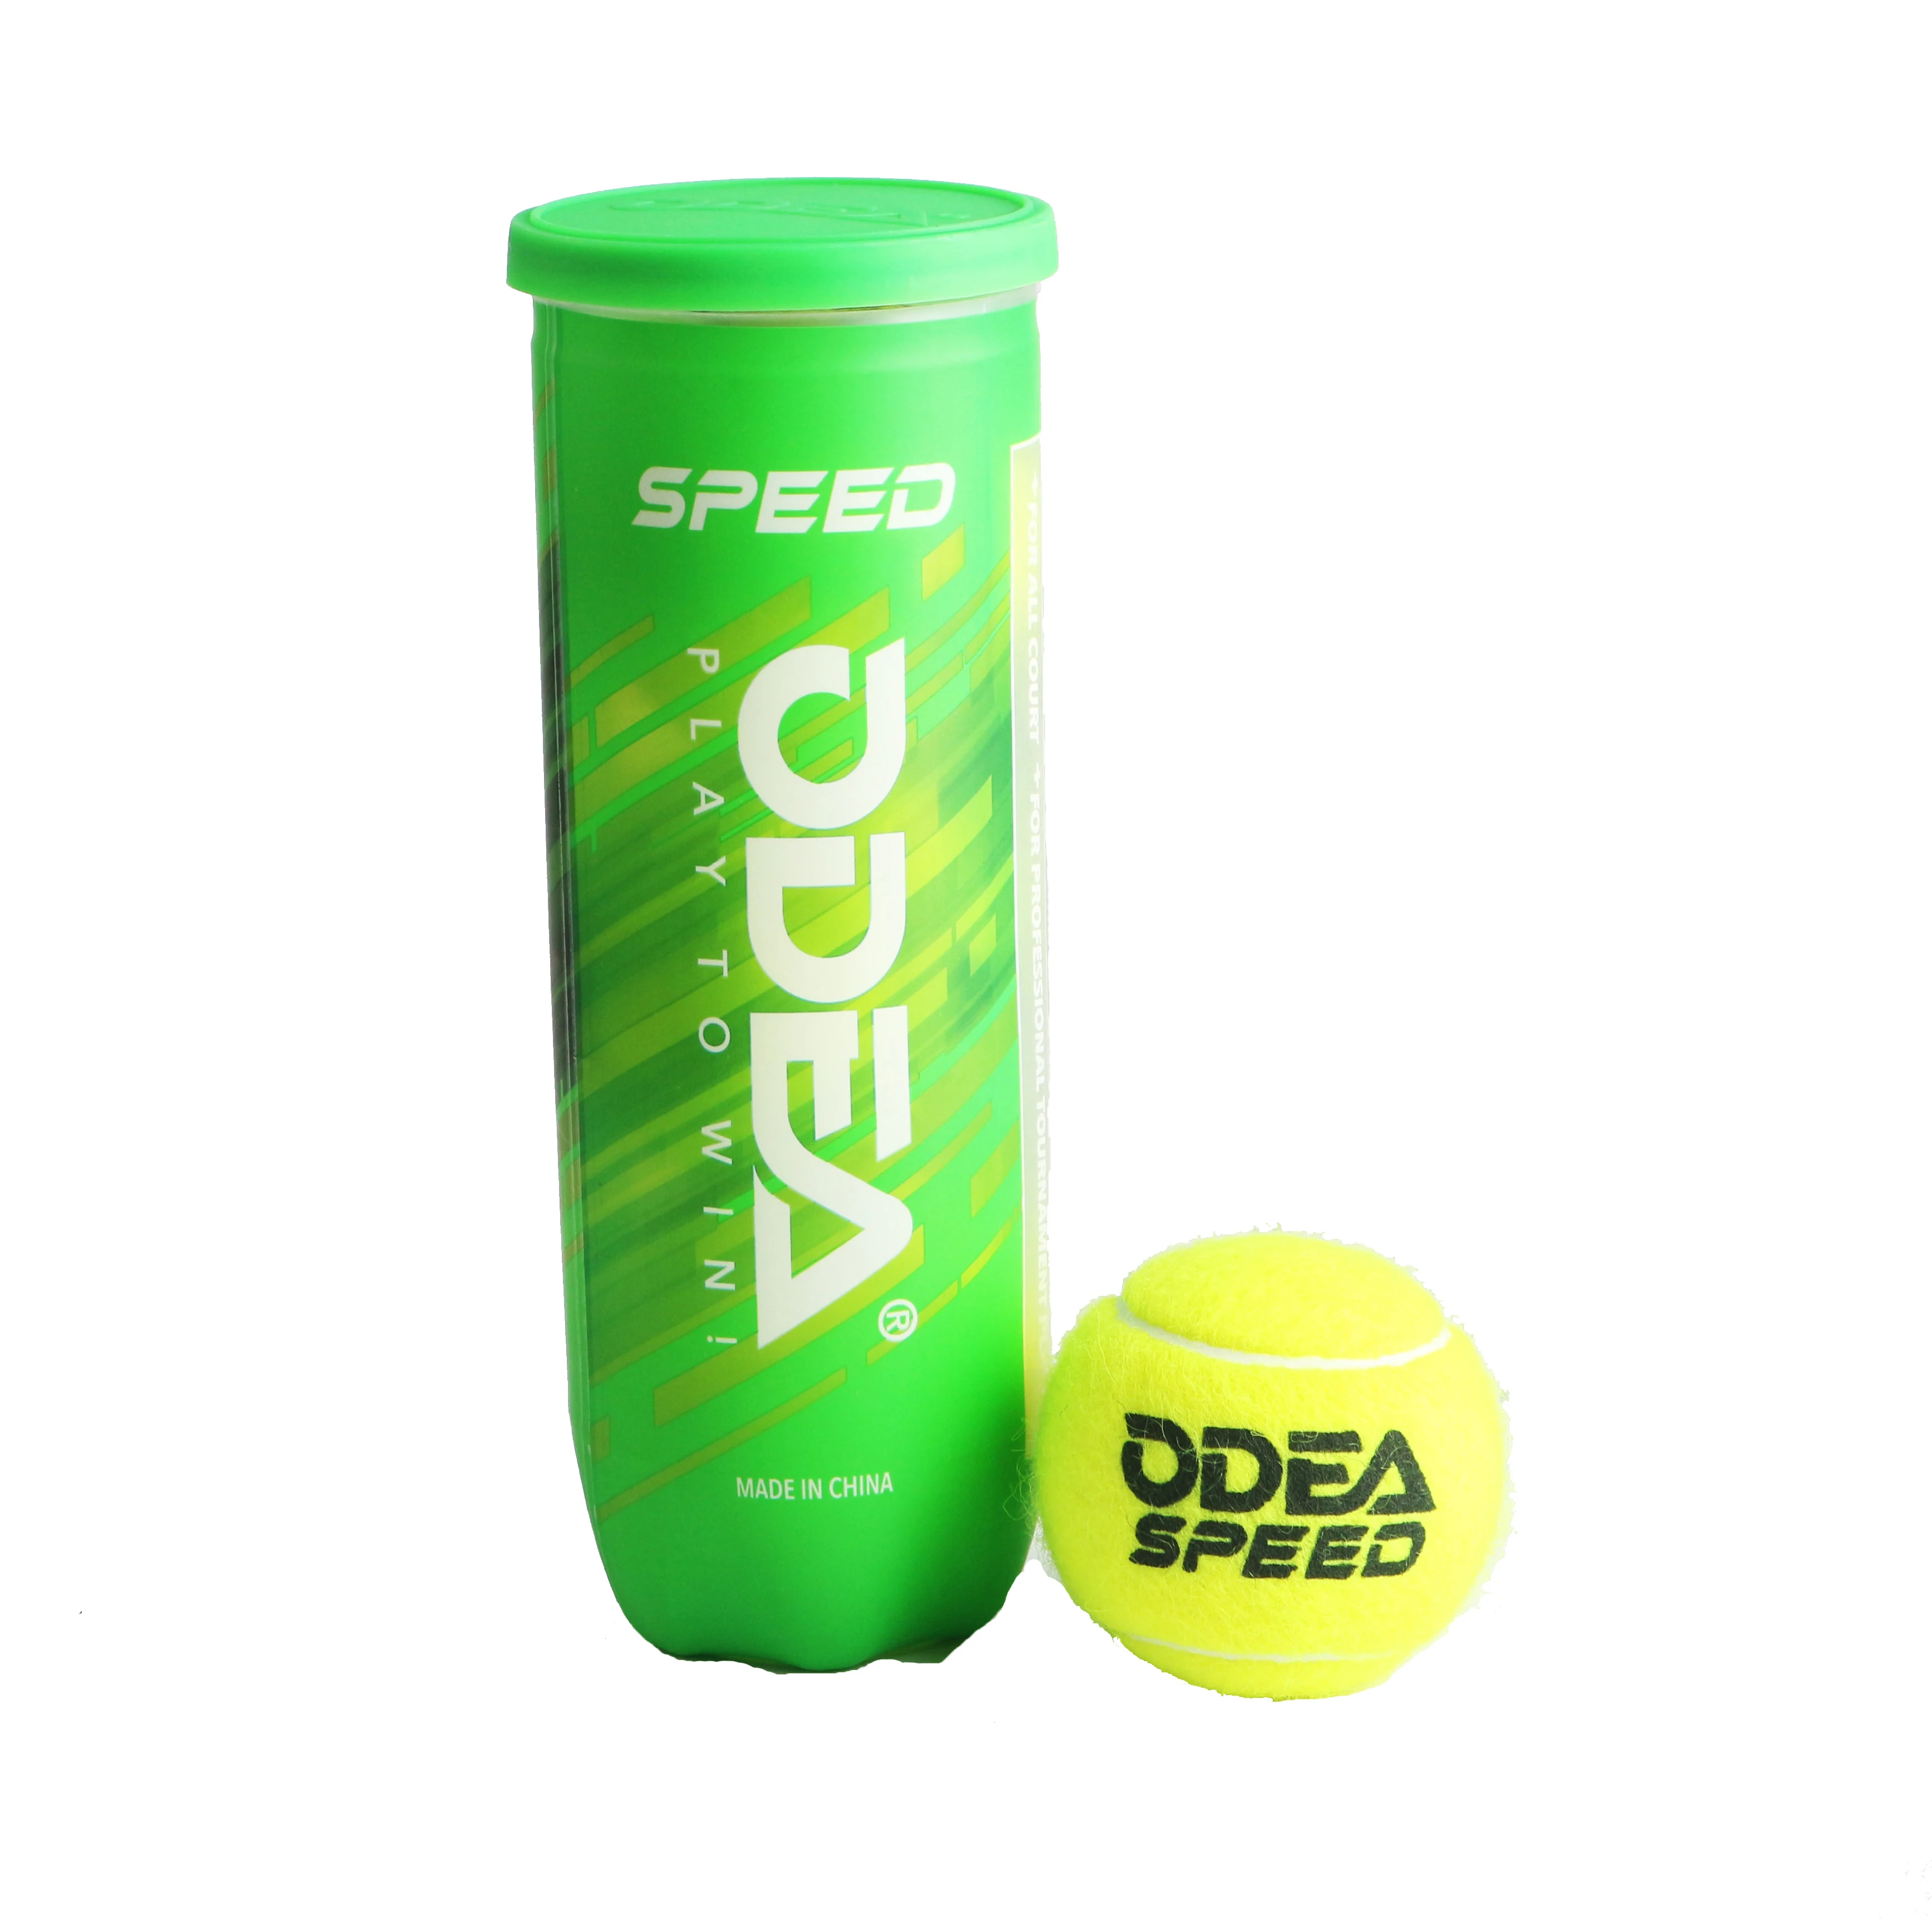 Производитель Odear, высококачественный турнирный теннисный мяч в тубах или банках